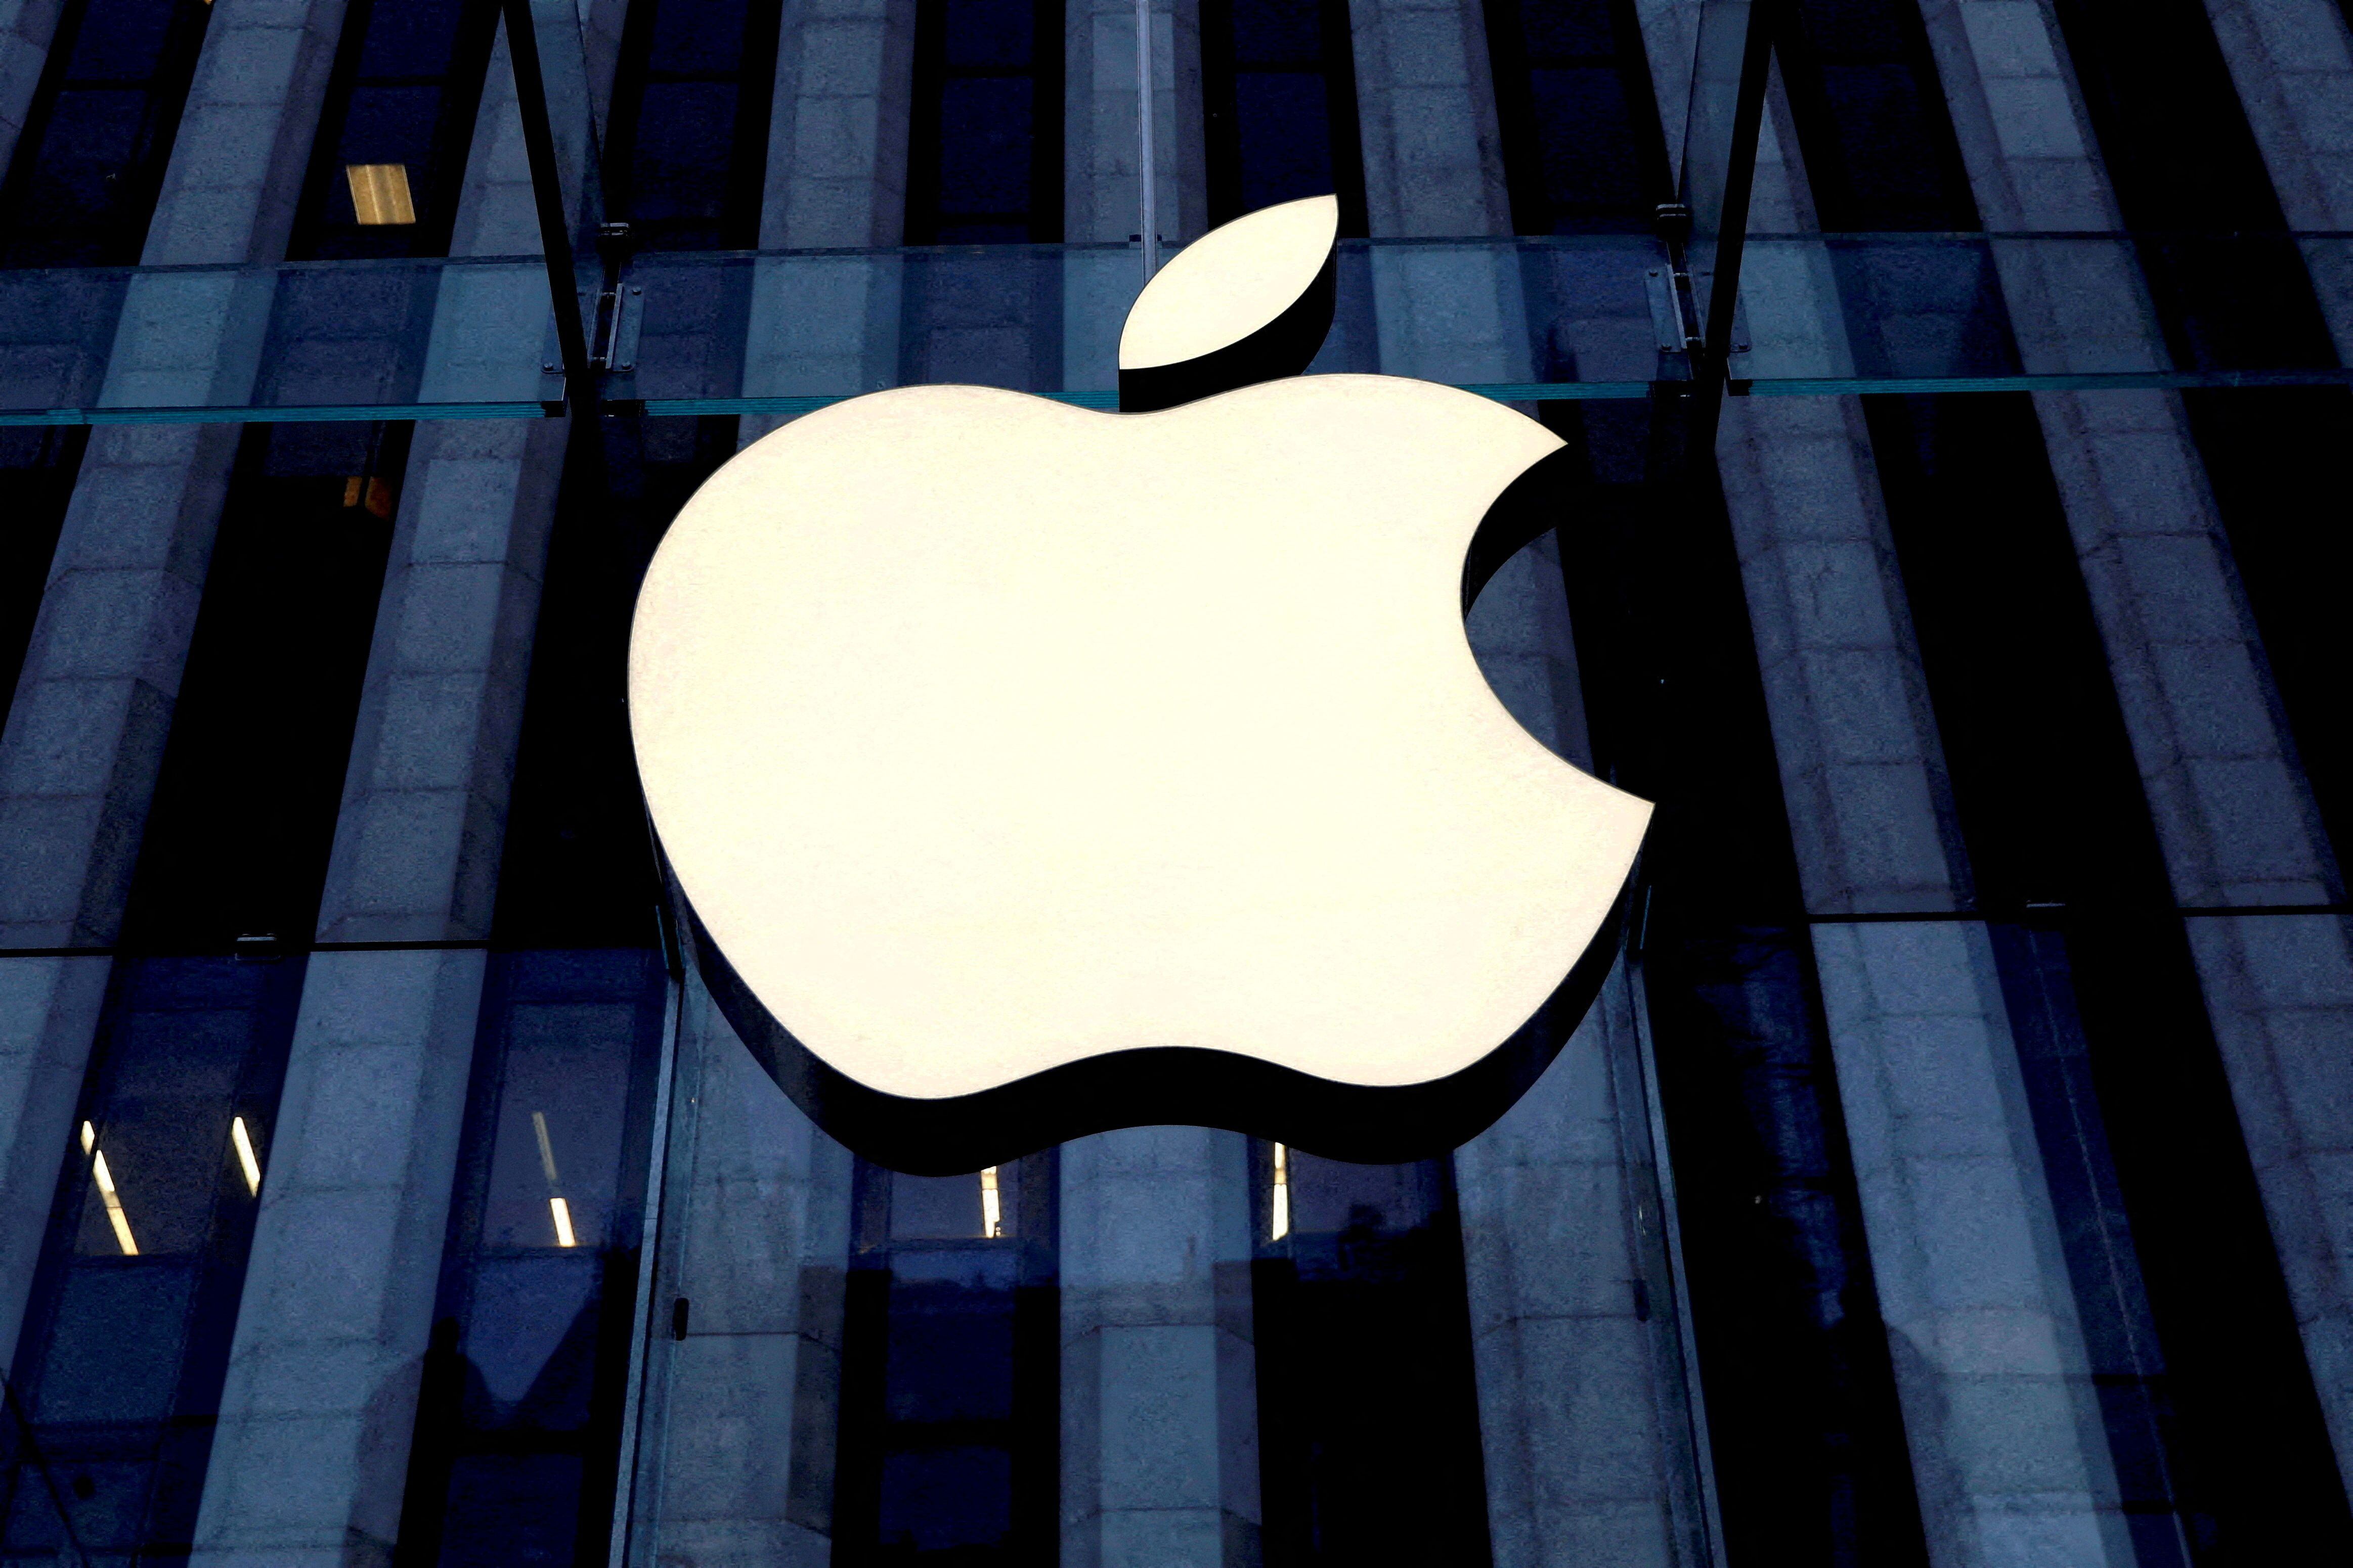 Apple continuó con sus operaciones y hoy es referente en el mundo tecnológico y empresarial. (Foto: REUTERS)